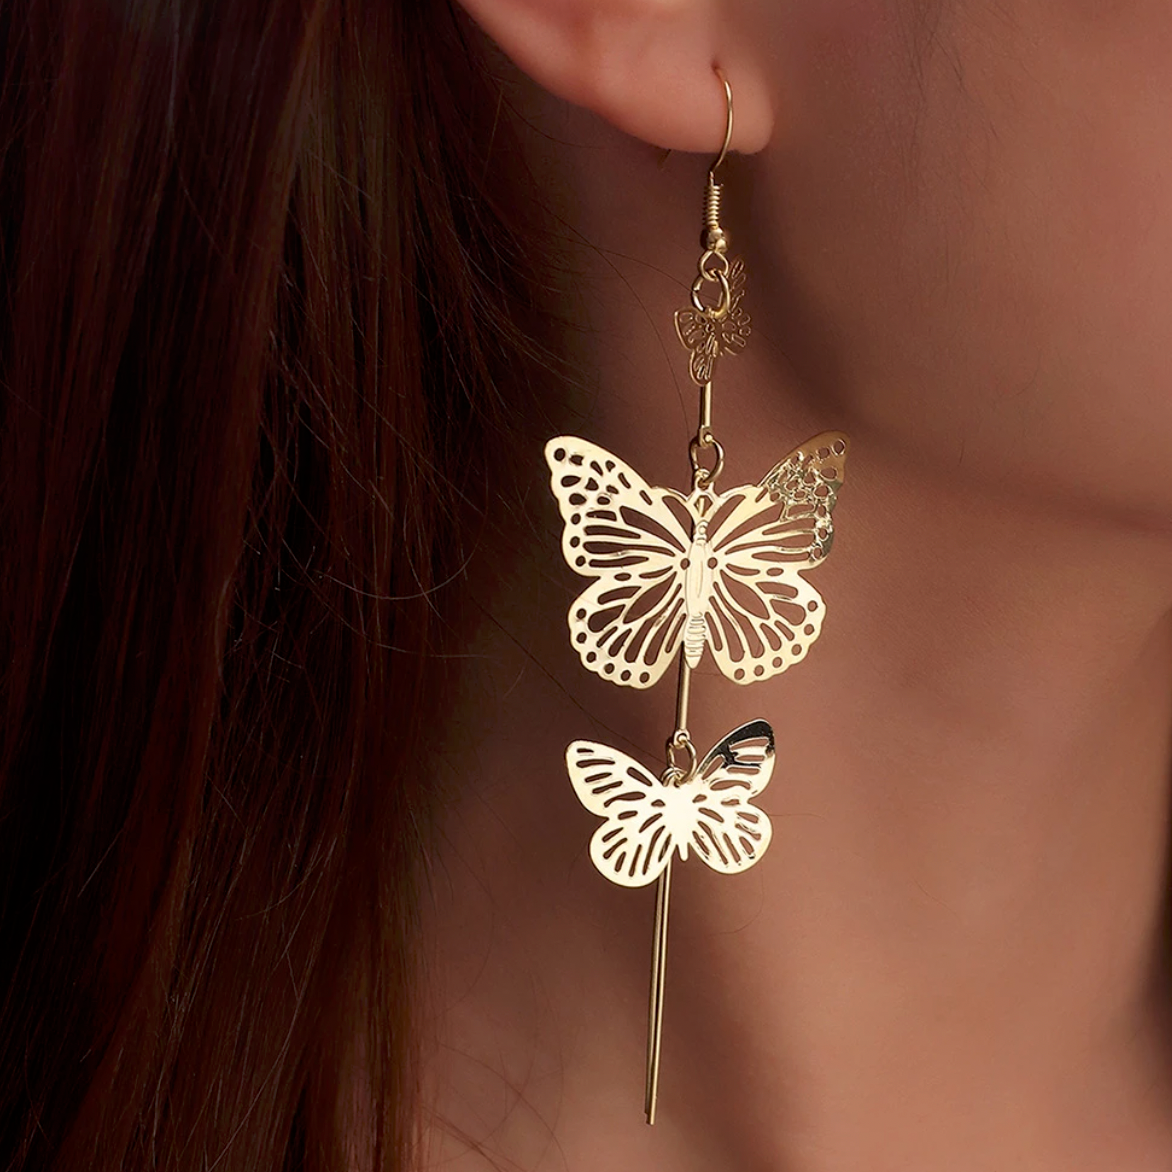 Boucles d'oreilles dorées pendantes 3 papillons dorés. Détails produit : Couleur or. Métal doré. Longueur 10 cm.